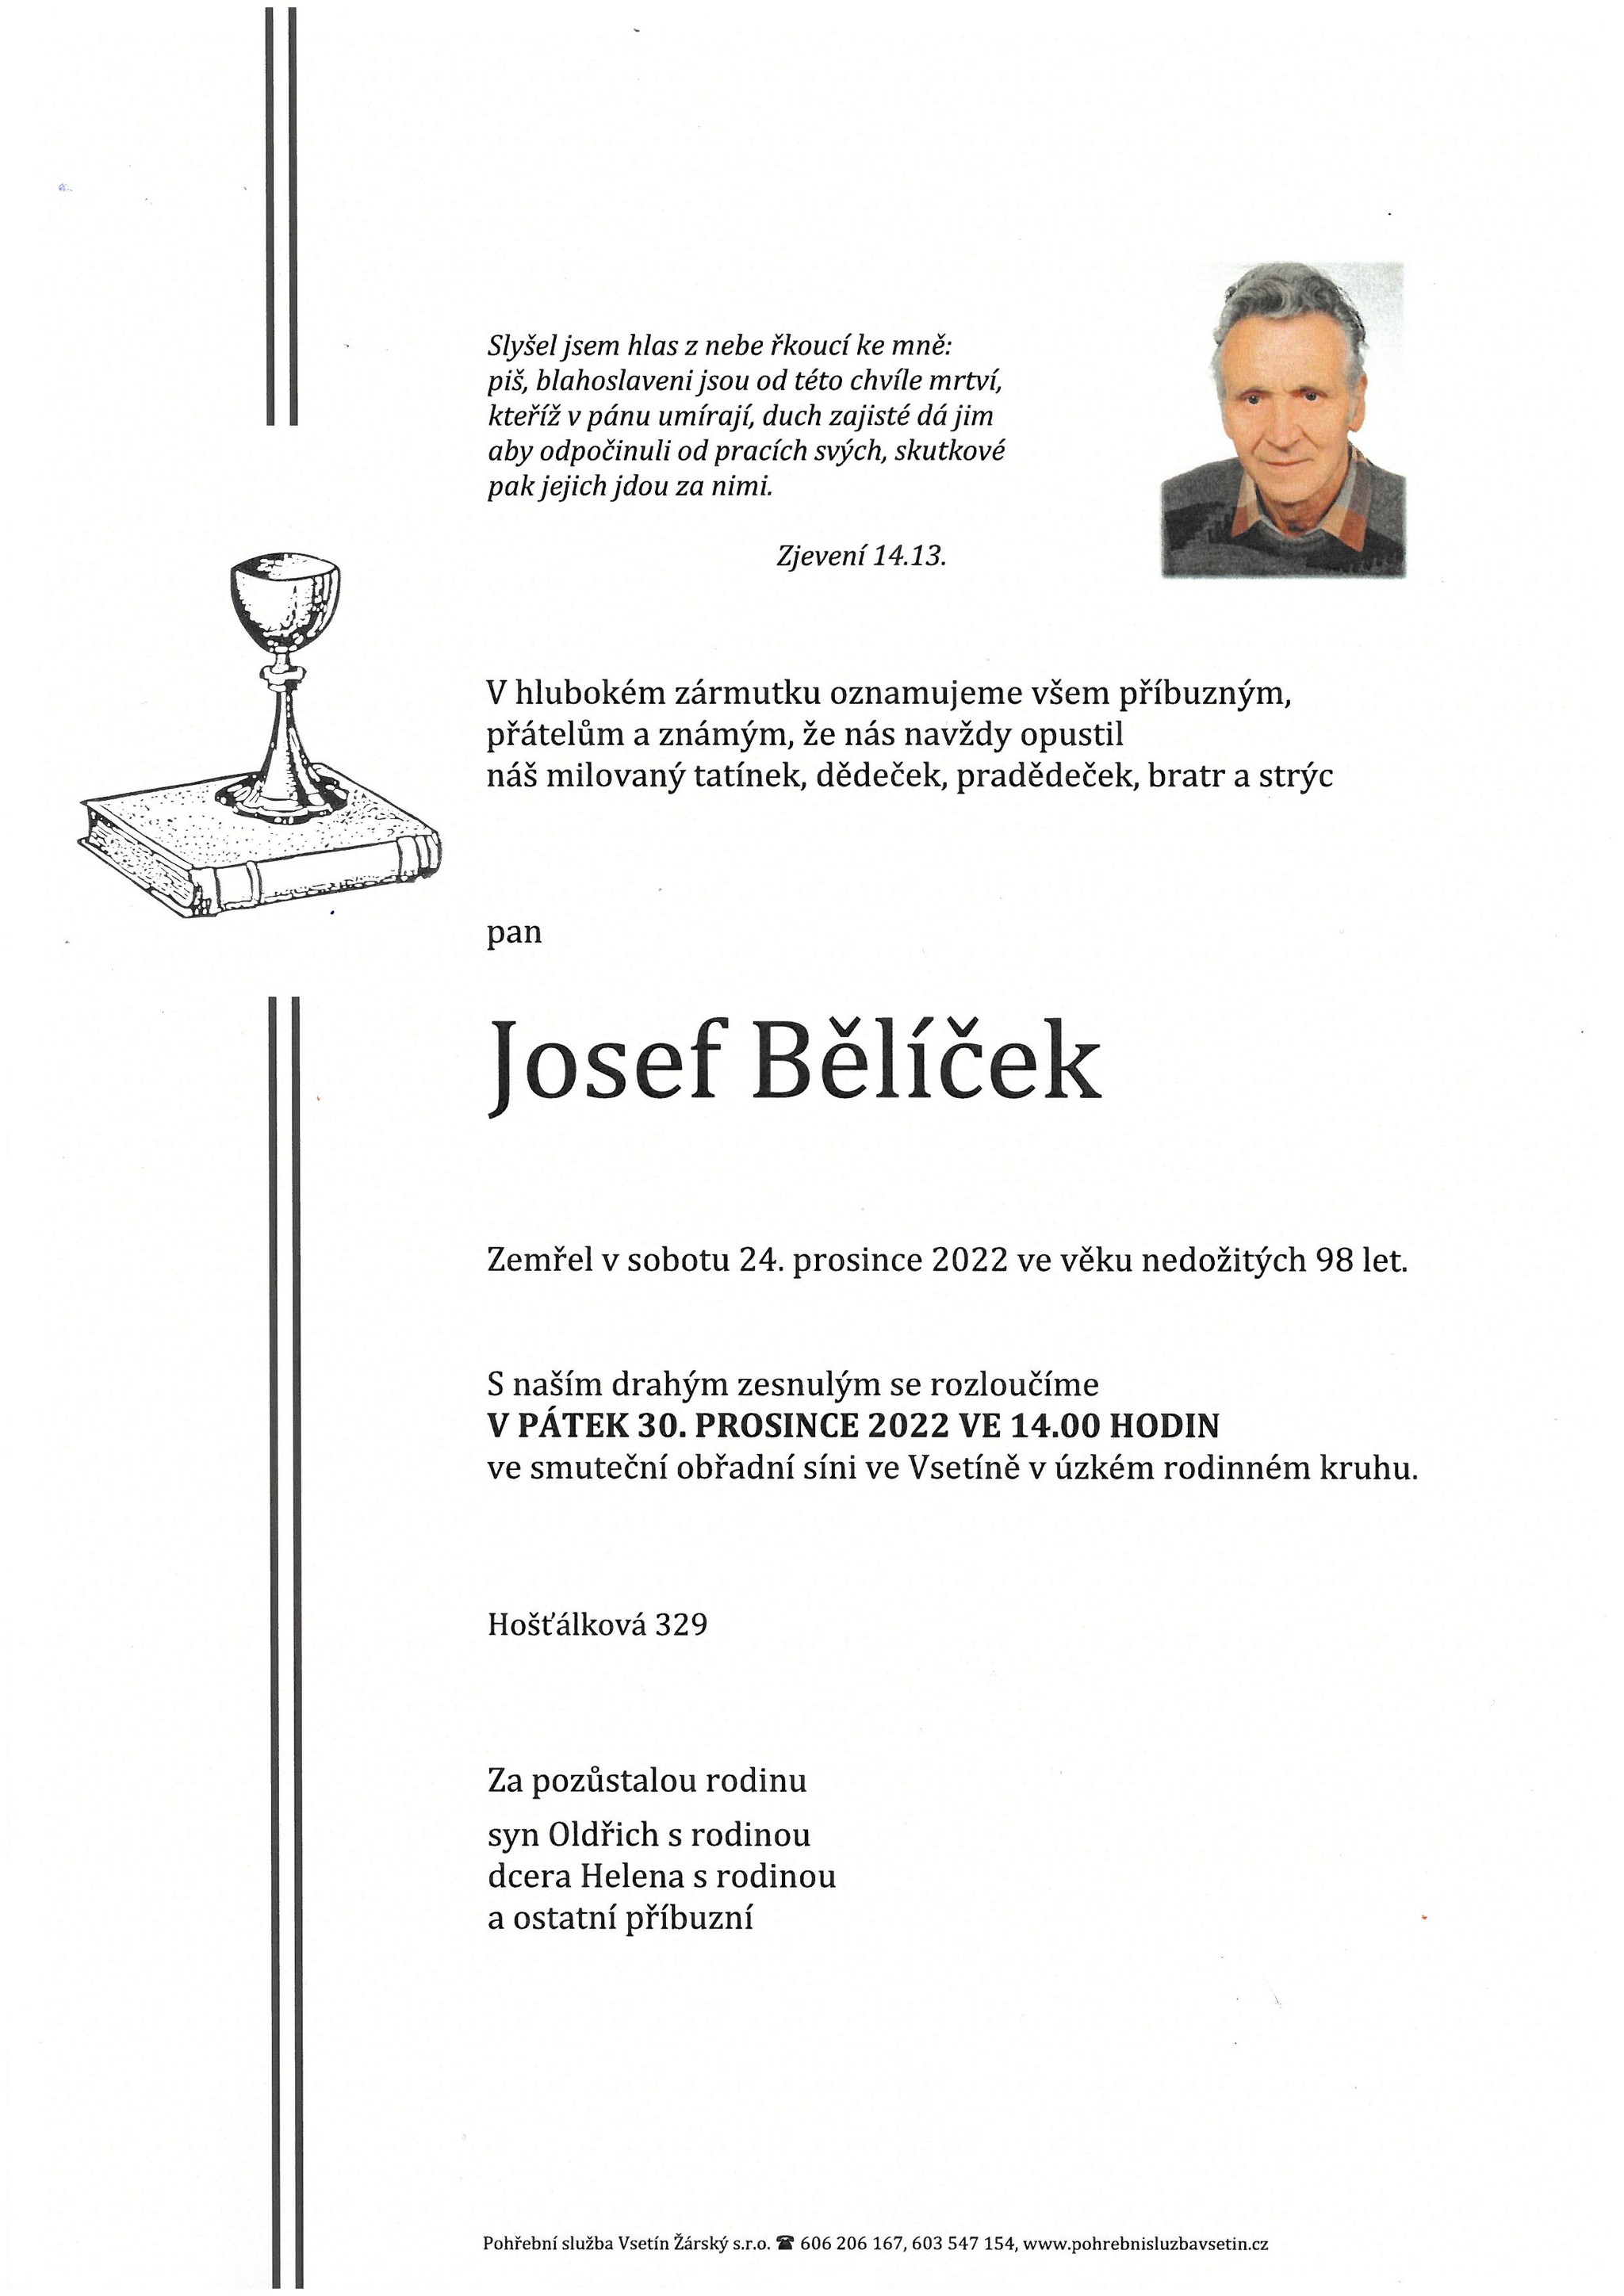 Josef Bělíček